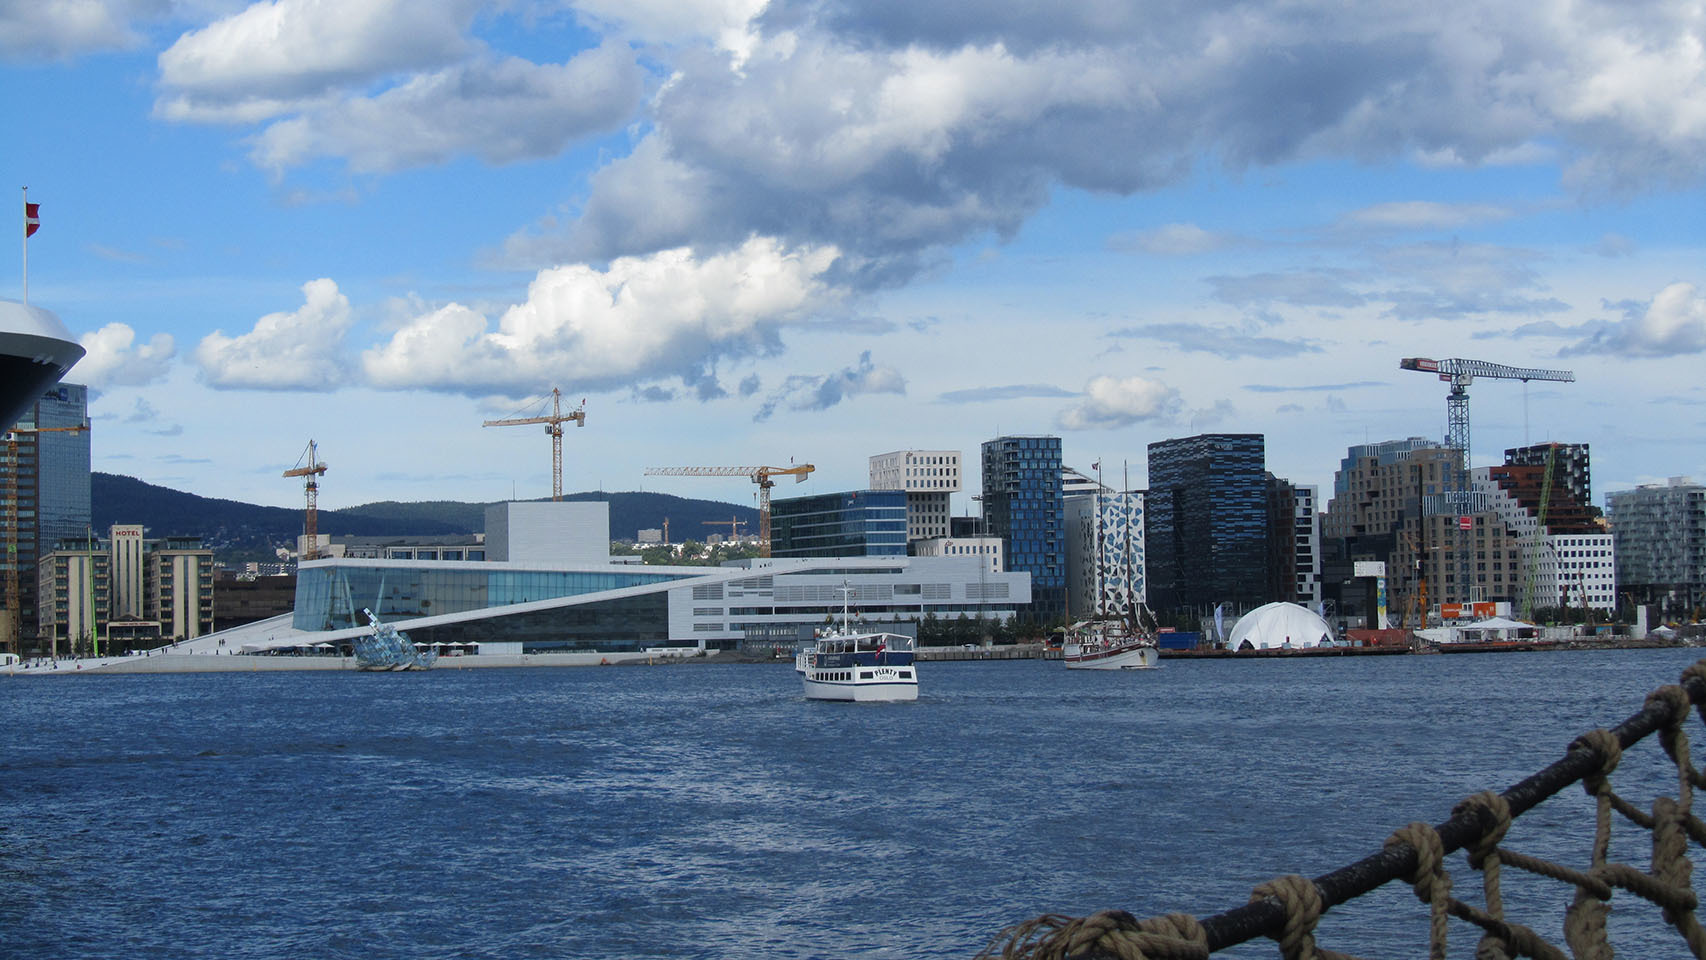 El Edificio de la Ópera y el Barcode, vistos desde el fiordo de Oslo.